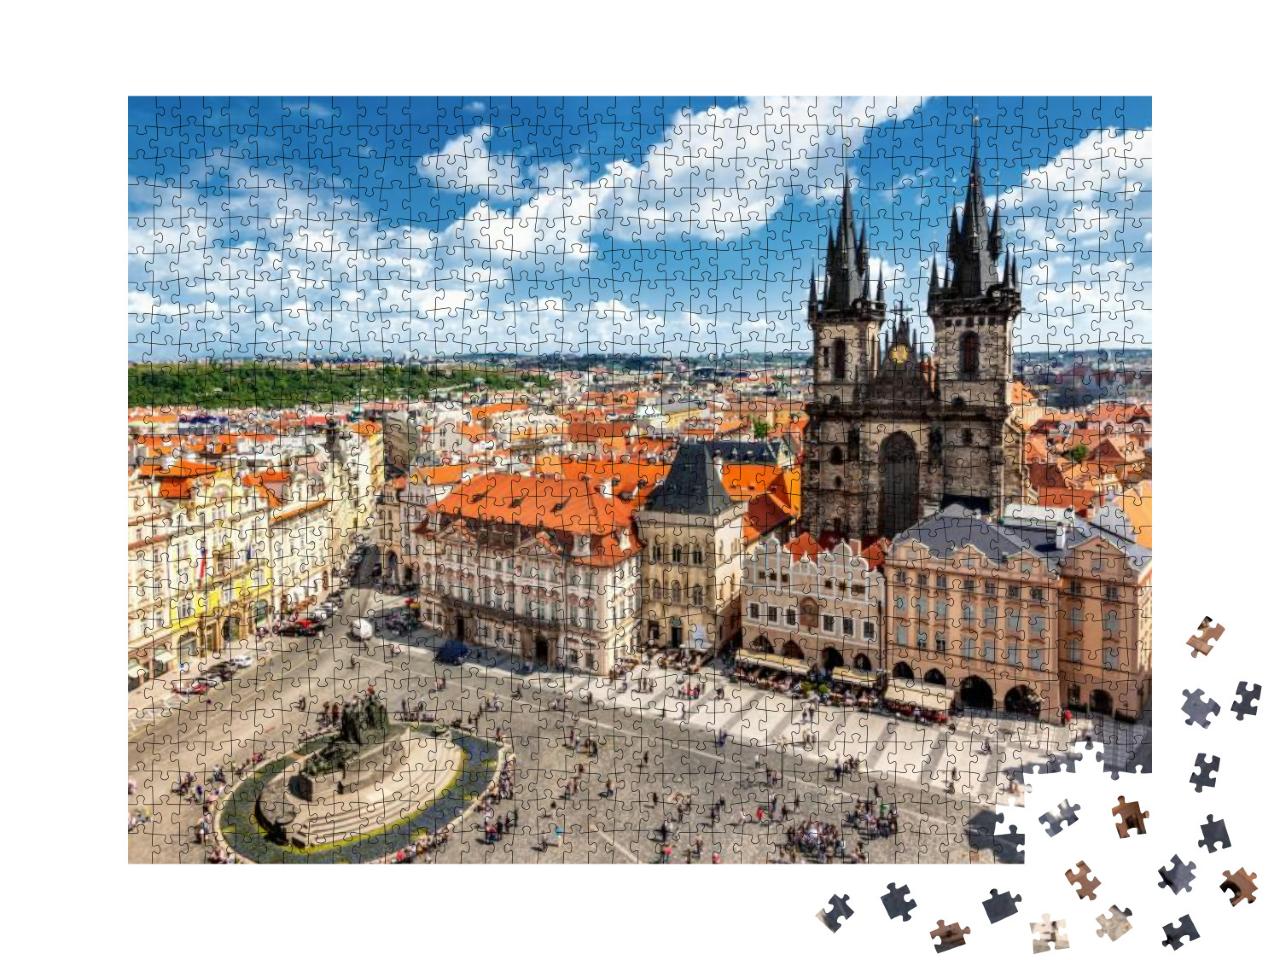 Puzzle 1000 Teile „Prag: Altstädter Ring“